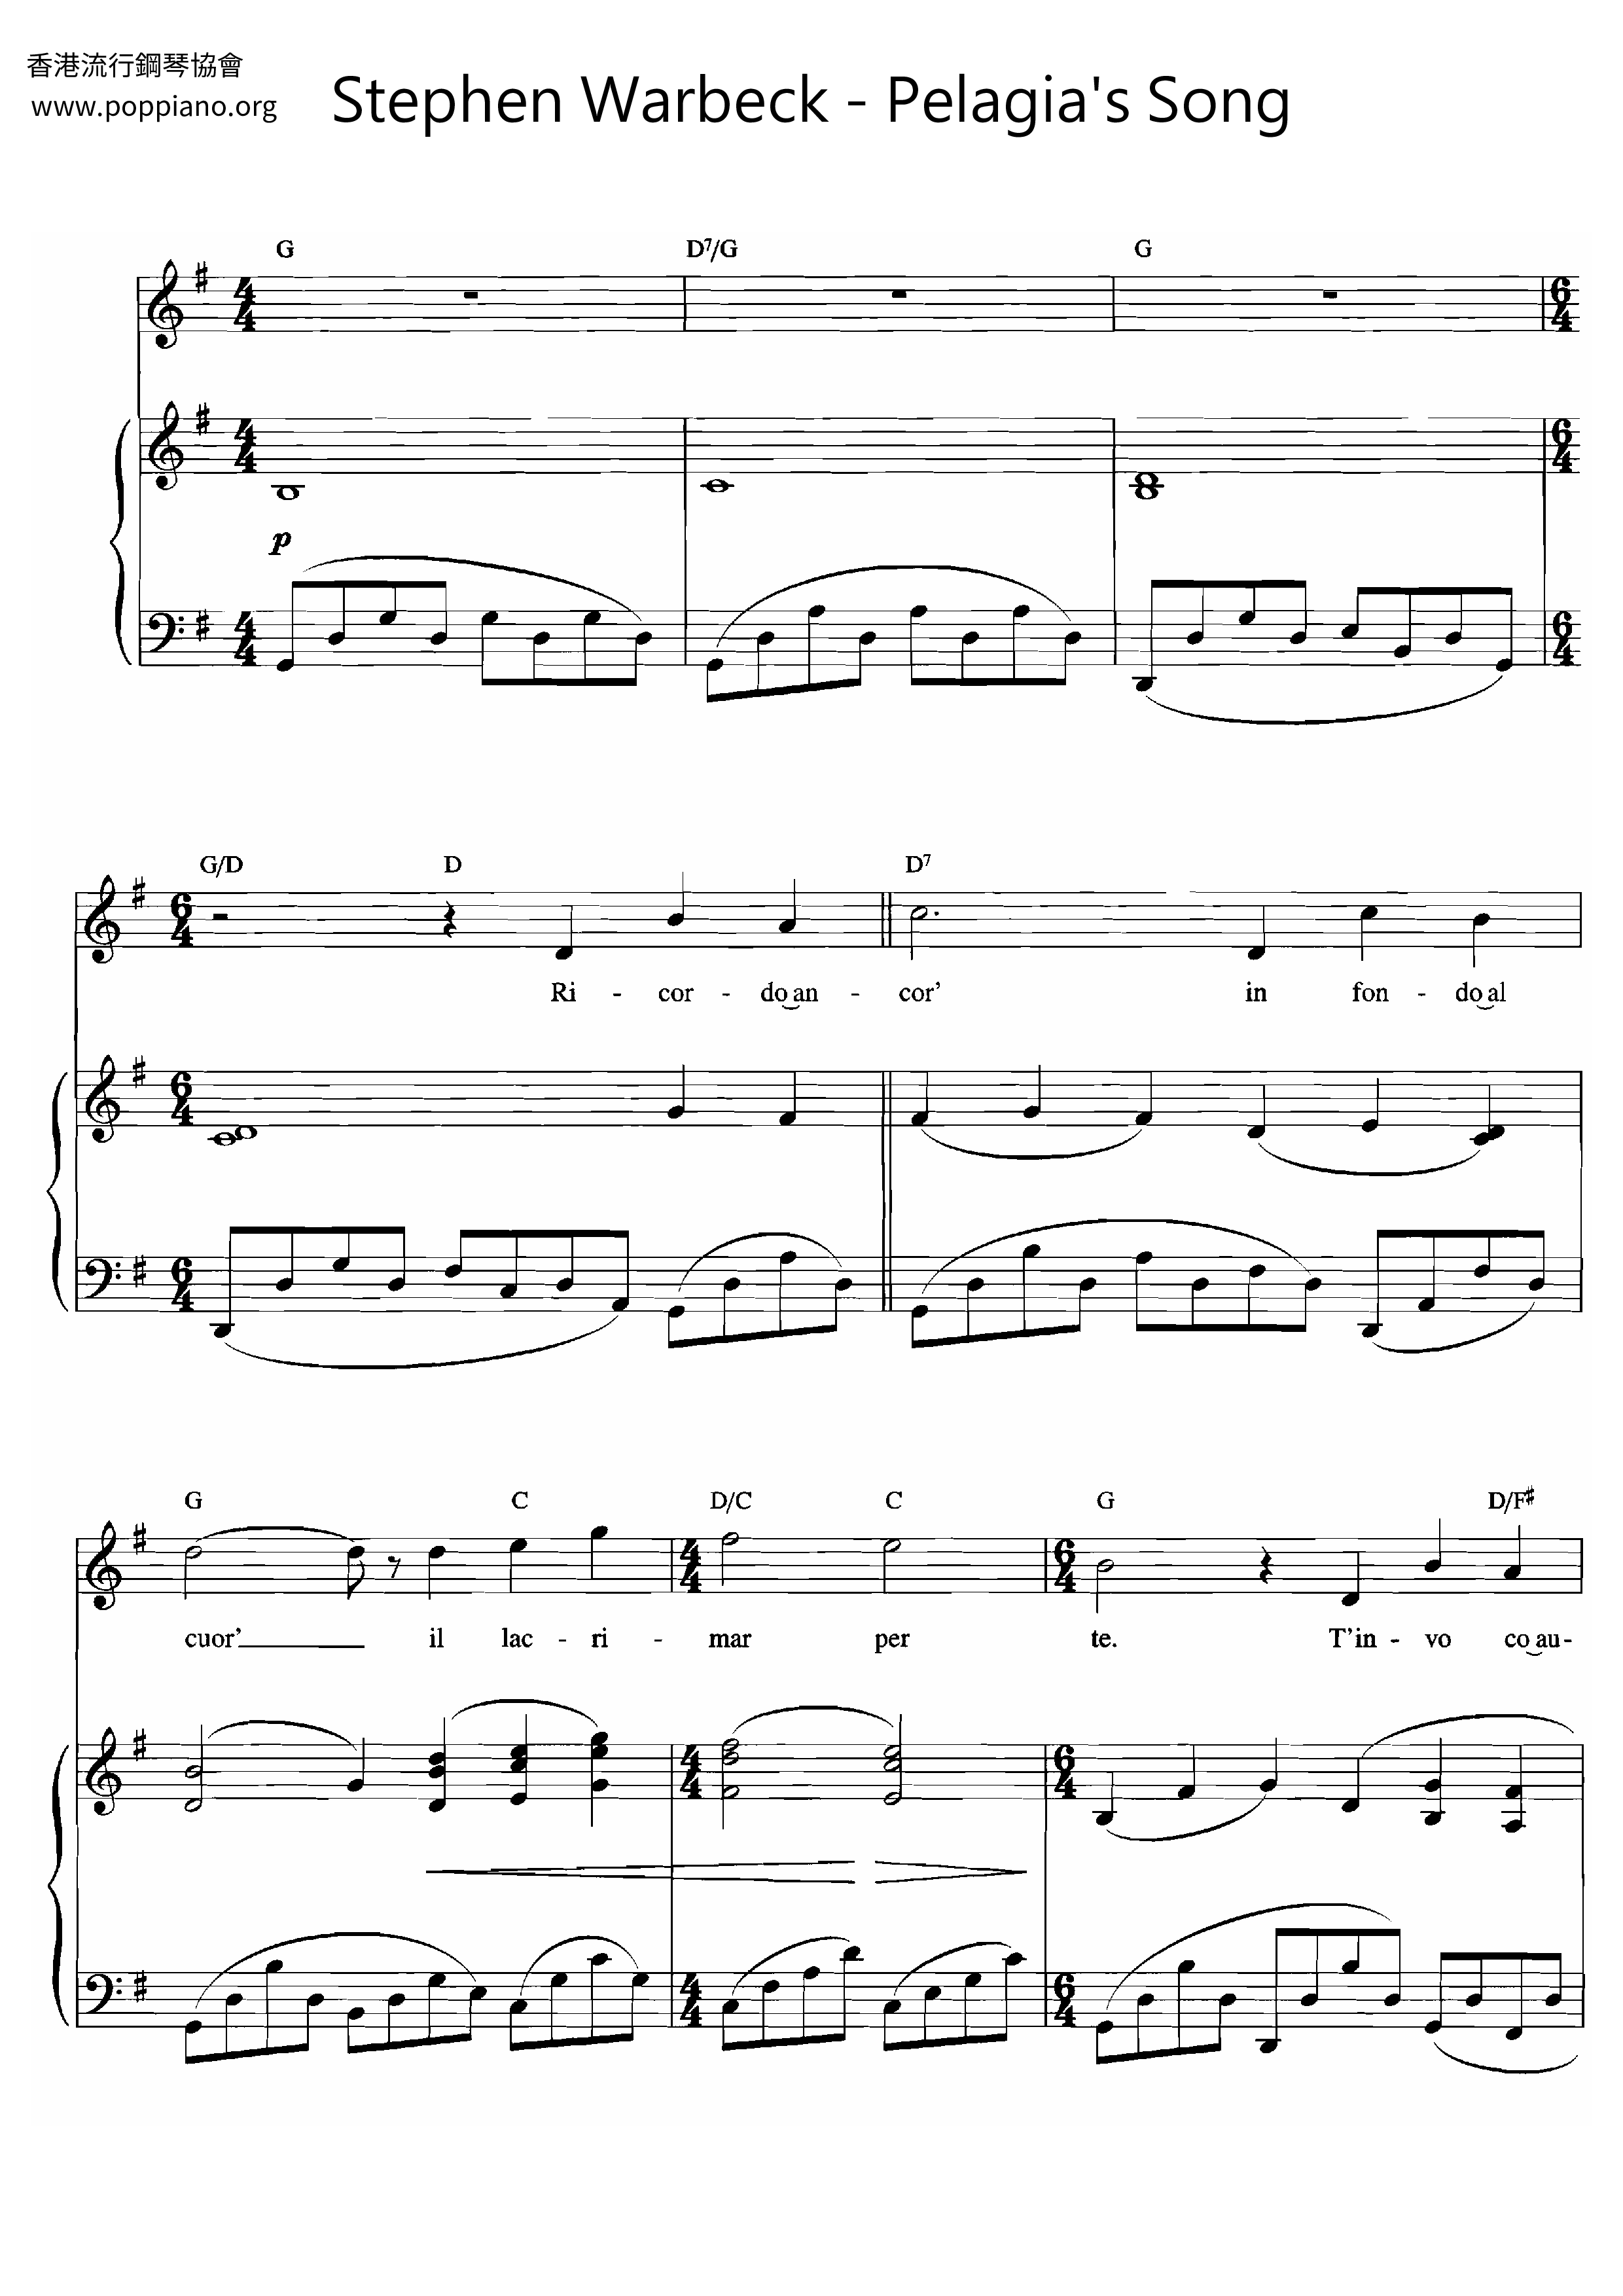 Pelagia's Song Score